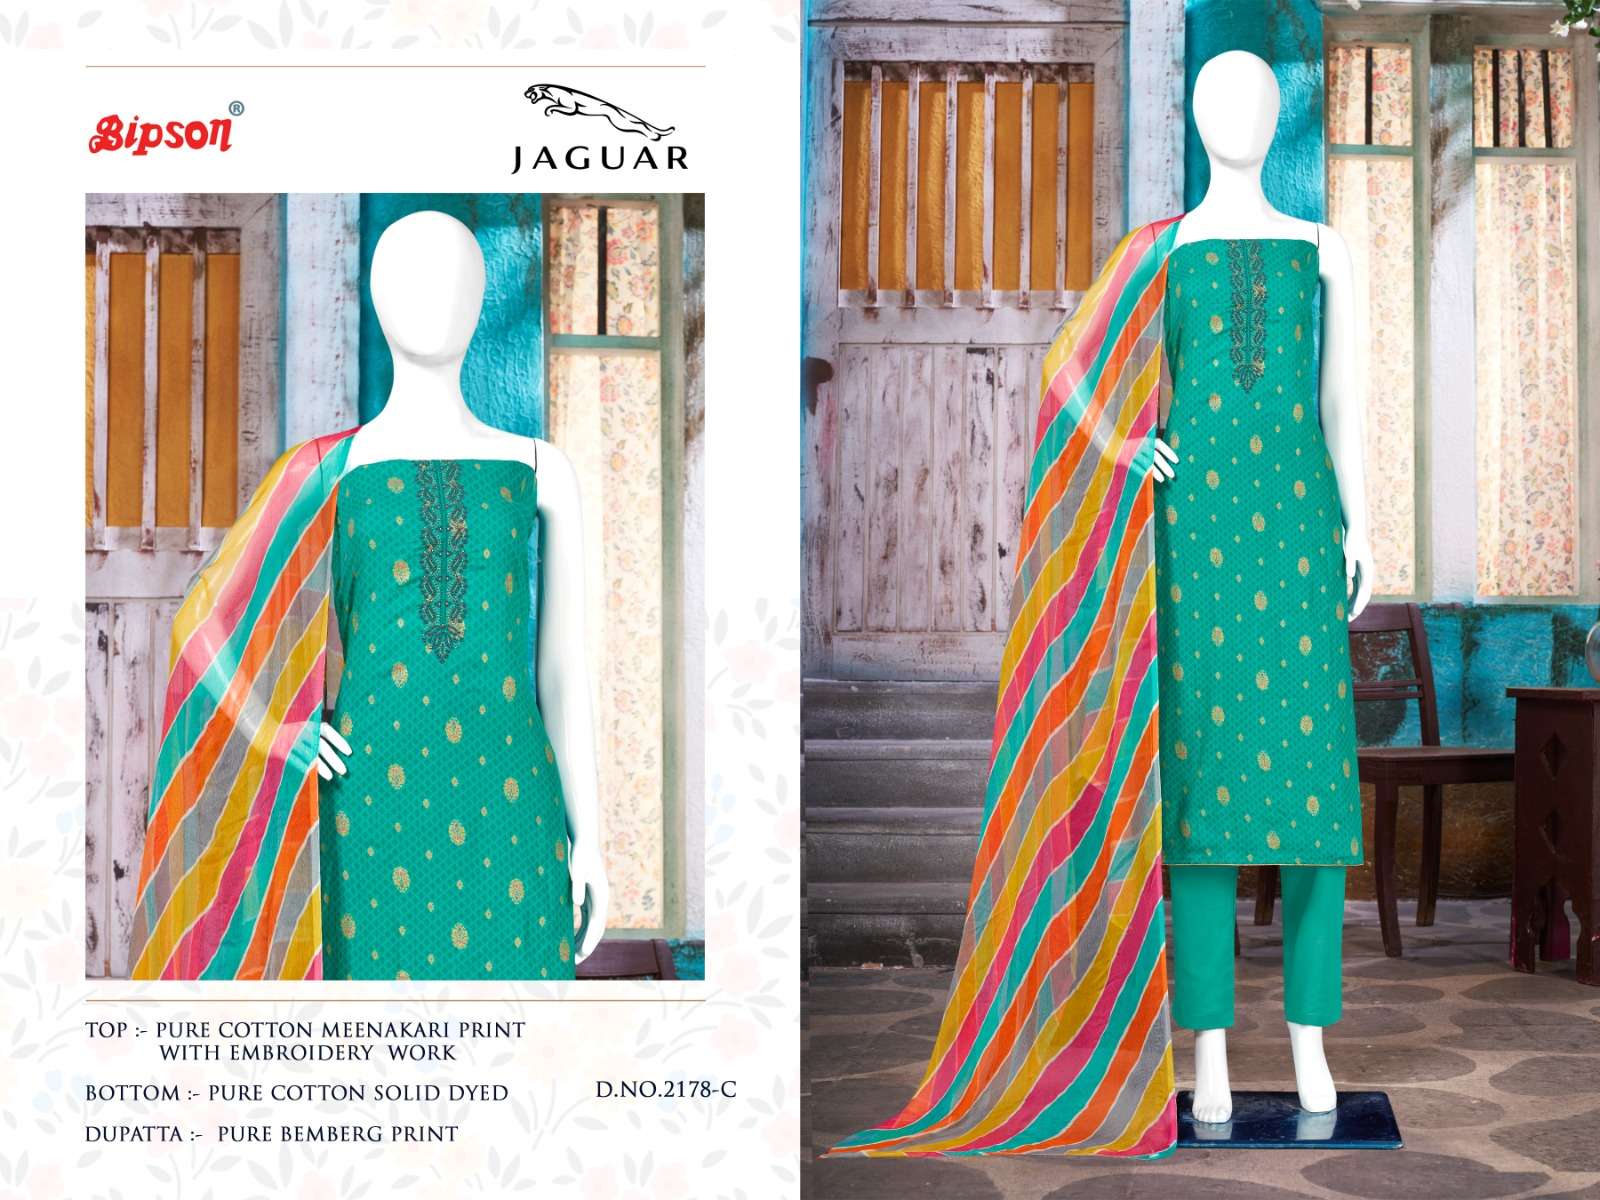 bipson prints jaguar 2178 series pure cotton designer salwar suits latest catalogue surat